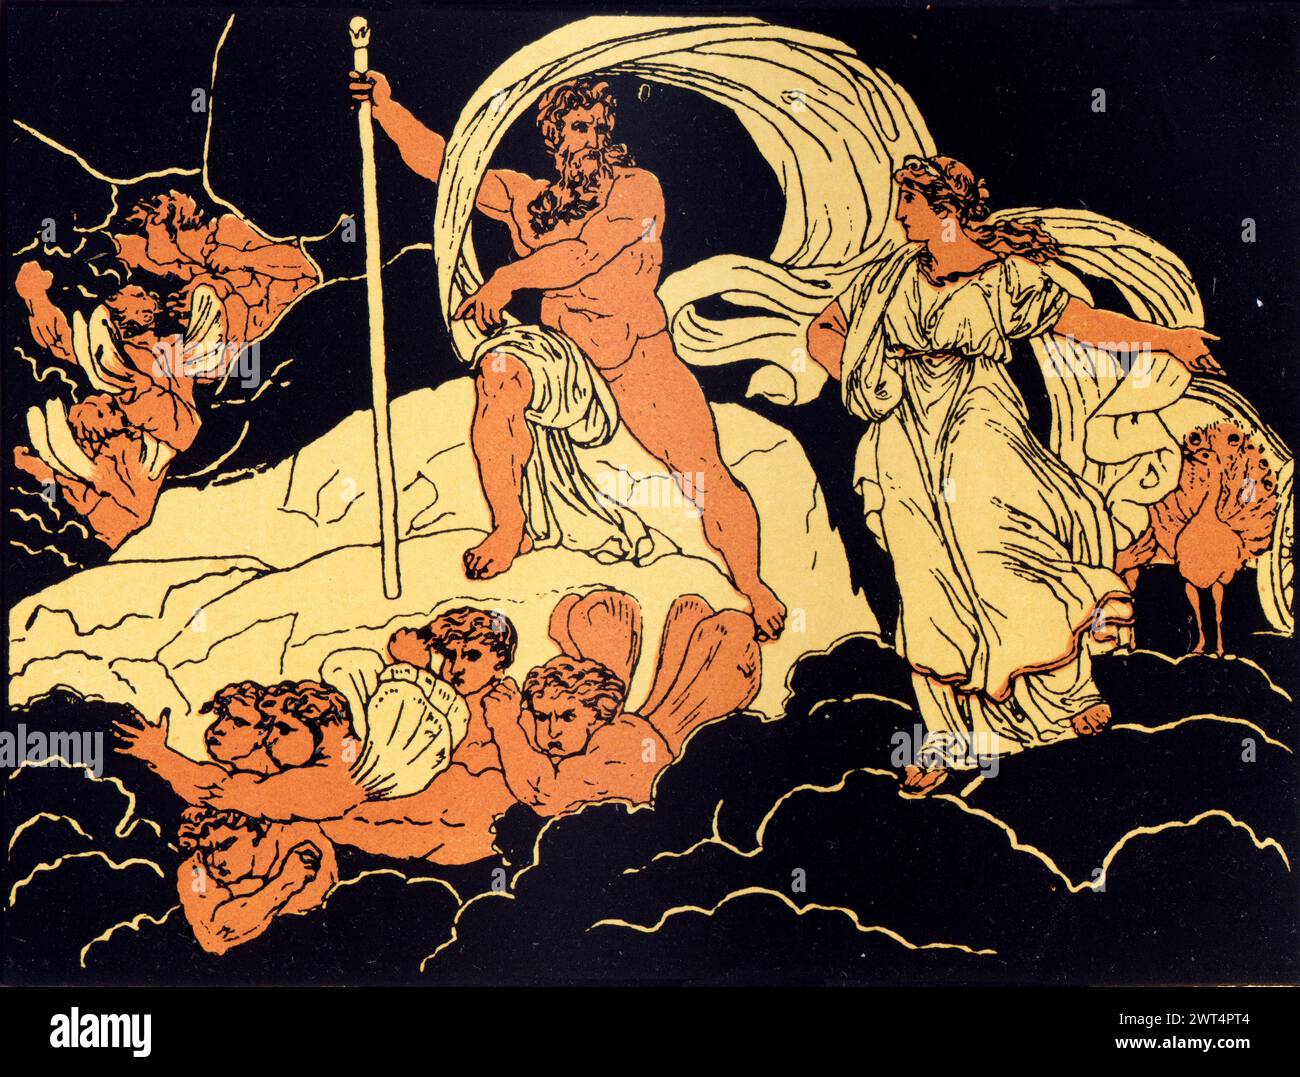 Vintage Illustration römische Mythologie, Juno und Aeolus, Aeneid ein lateinisches Epos, das die legendäre Geschichte von Aeneas erzählt, einem Trojaner, der vor dem Fall geflohen ist Stockfoto